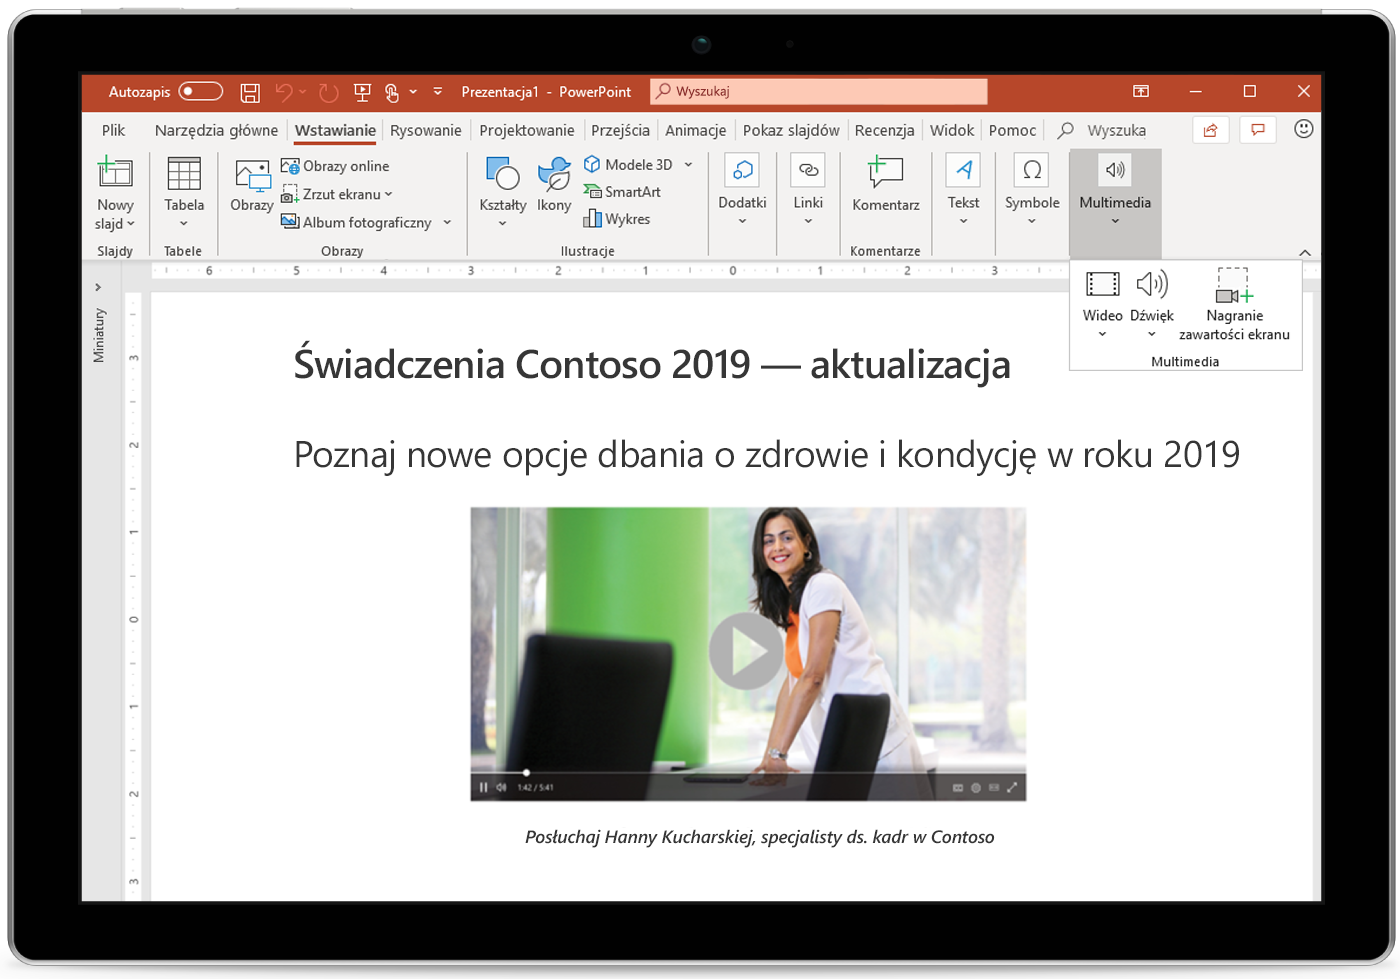 Obraz tabletu z wyświetlonym slajdem programu PowerPoint.